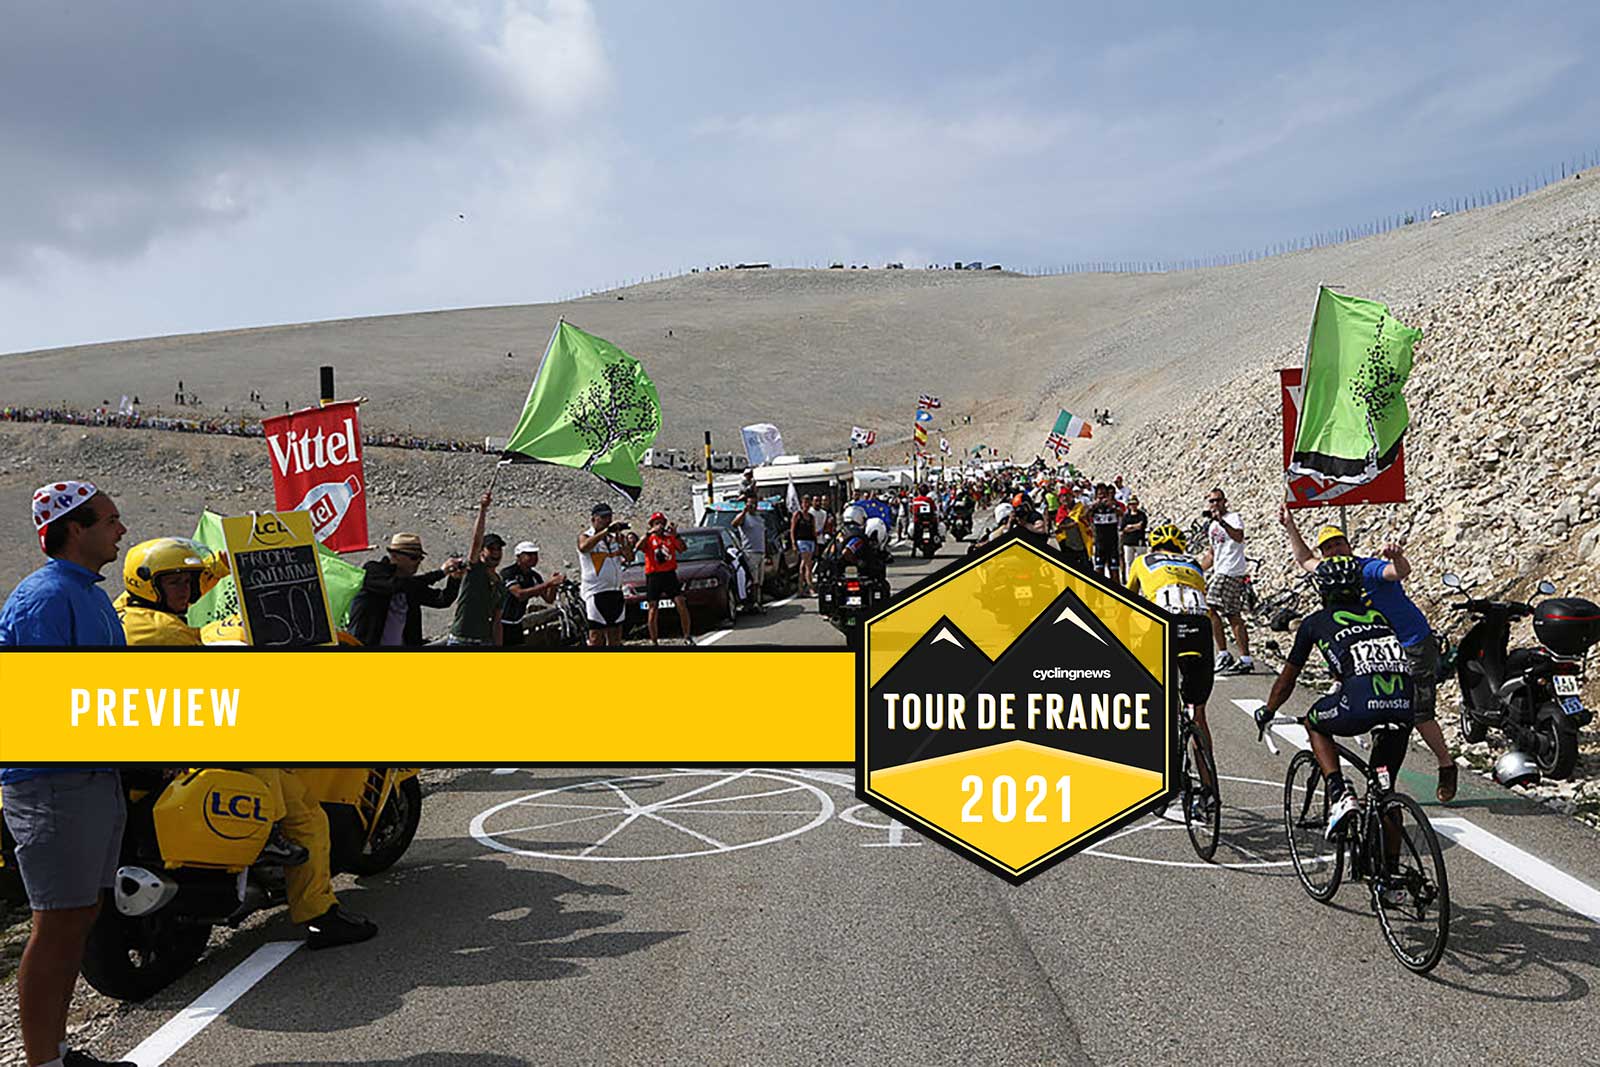 The Tour de France on the Mont Ventoux